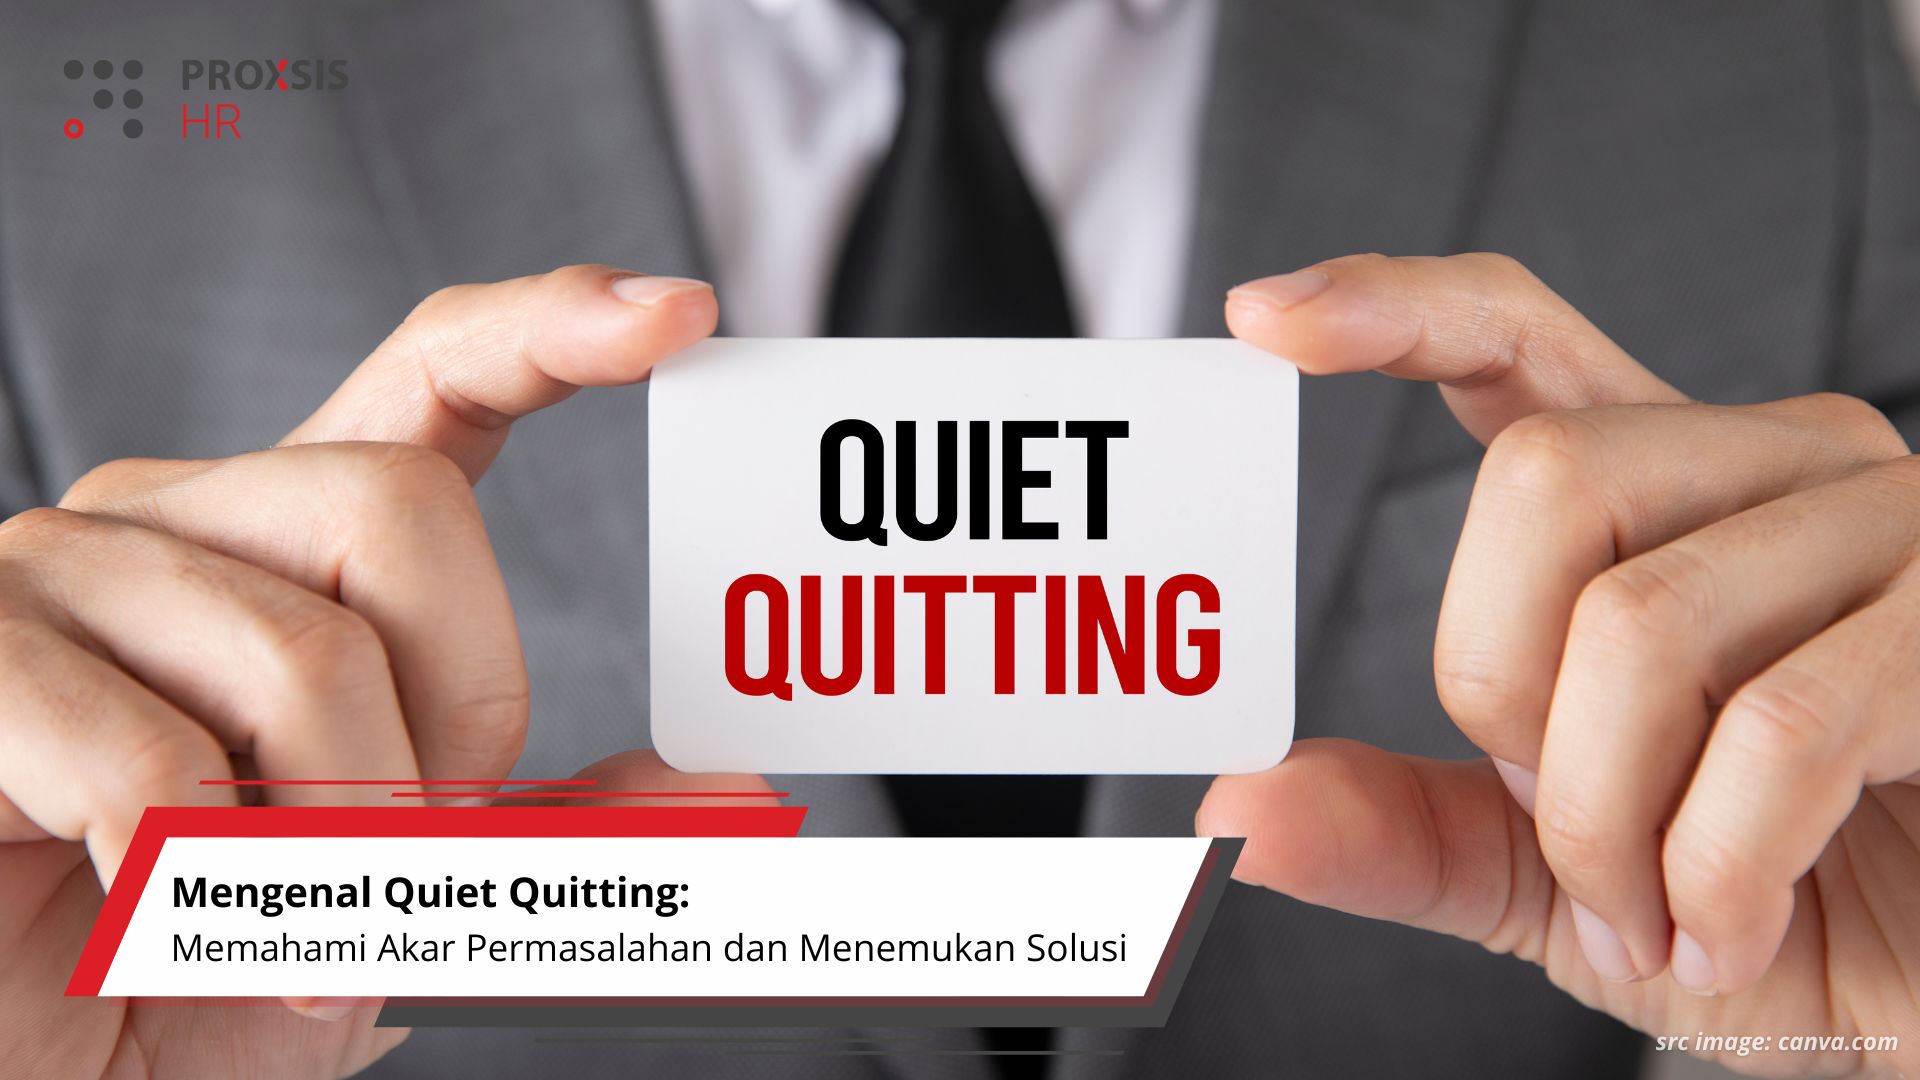 Mengenal Quiet Quitting: Memahami Akar Permasalahan dan Menemukan Solusi